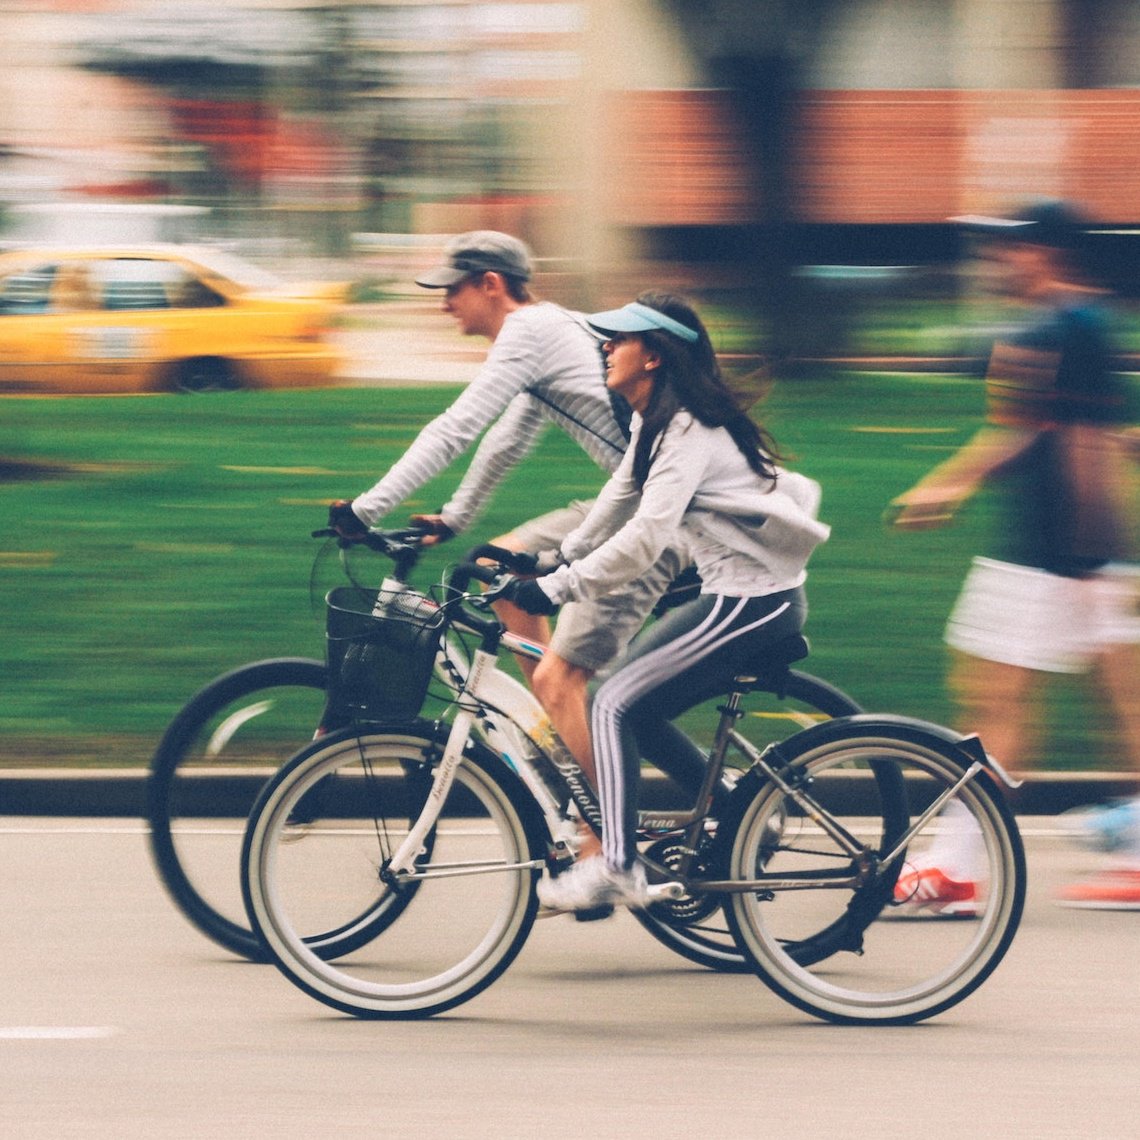 L’indemnité vélo va-t-elle se généraliser en entreprise?